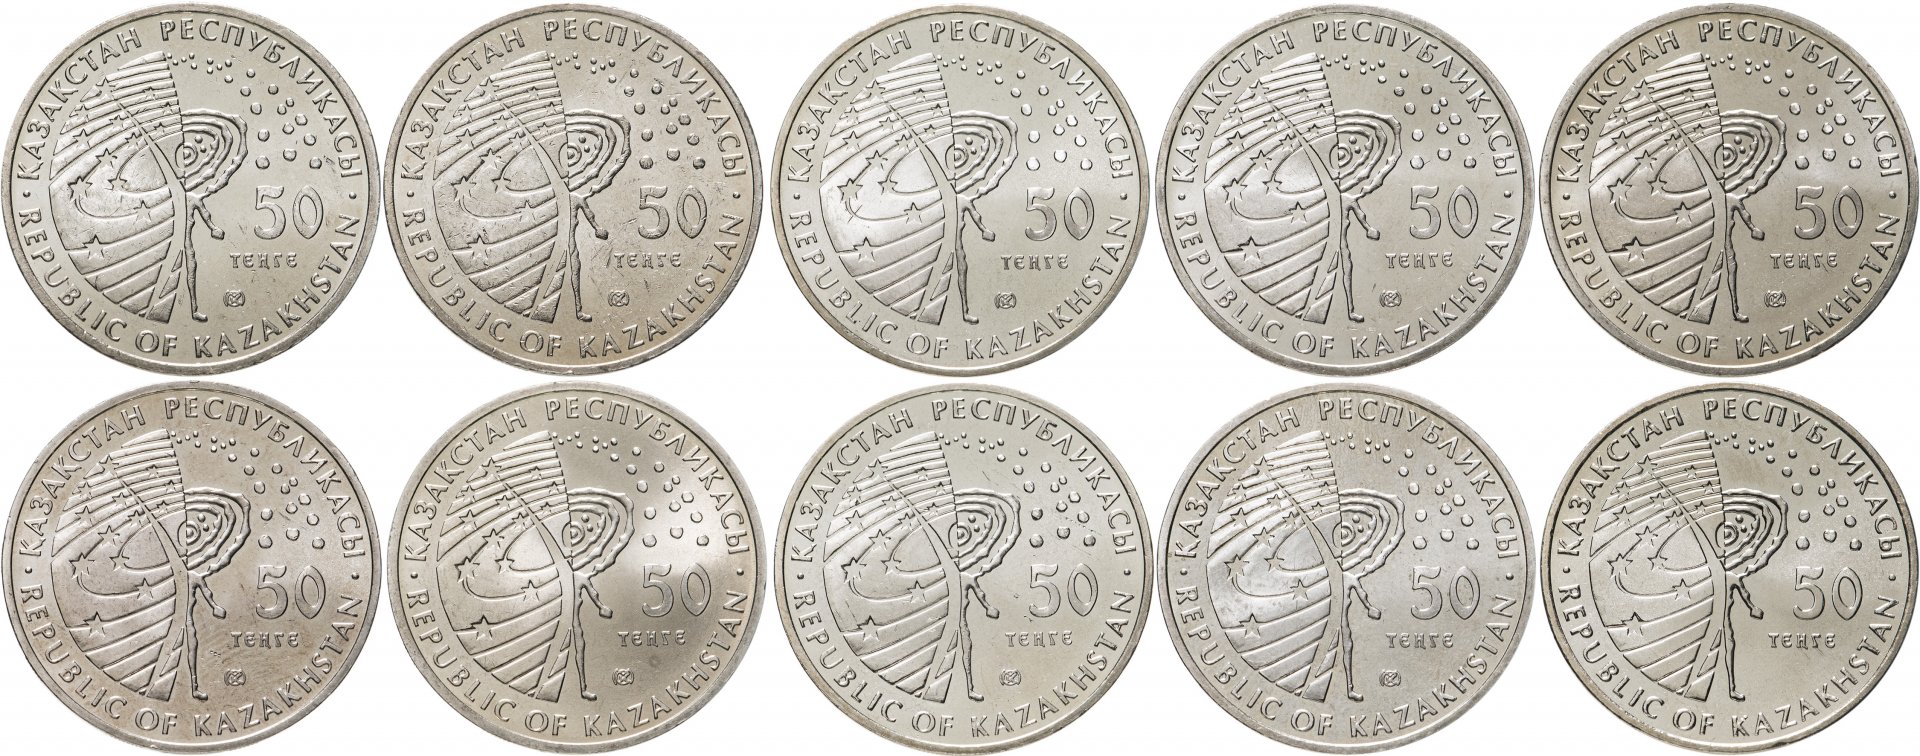 Казахстан - 50 тенге (2006 г.). Монеты 50 тенге 2020 года. Казахстан набор монет Сакский стиль.